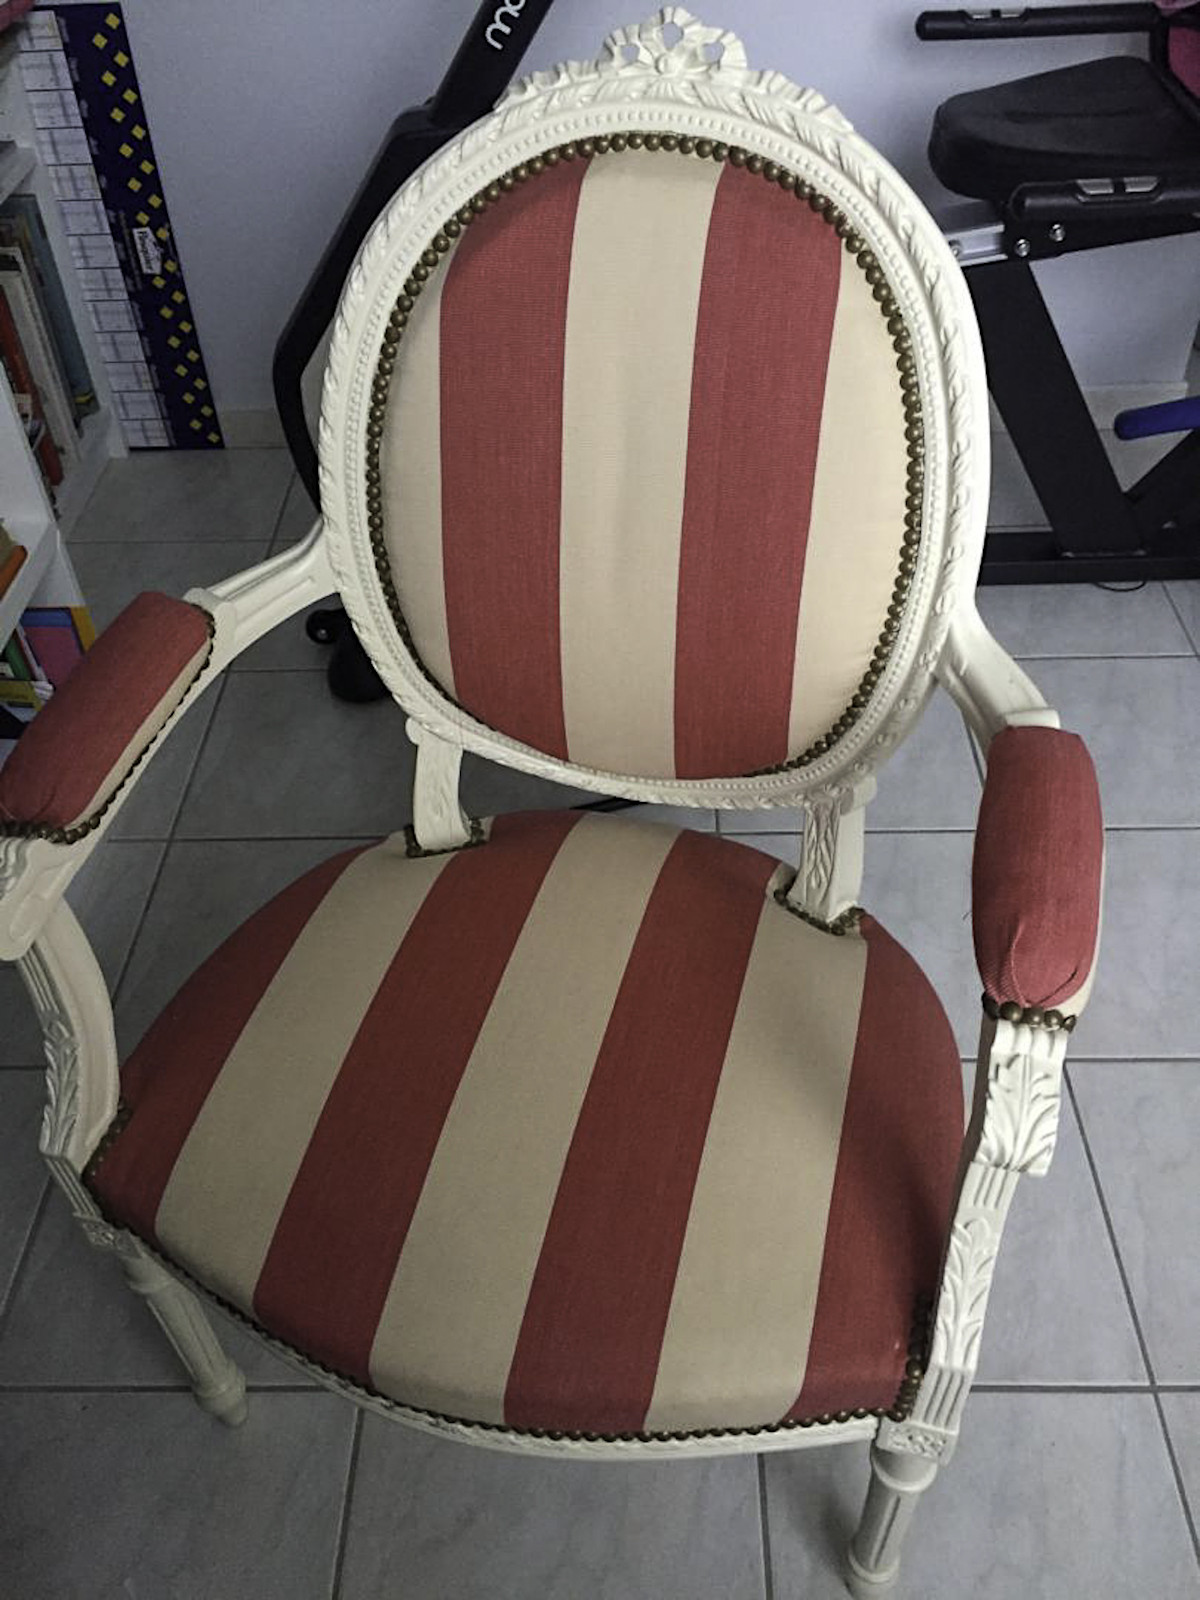 Relooking de fauteuils Louis XVI par Rouge Indigo. finition noire. Tissus noir et beige. Photos avant / après réalisation.